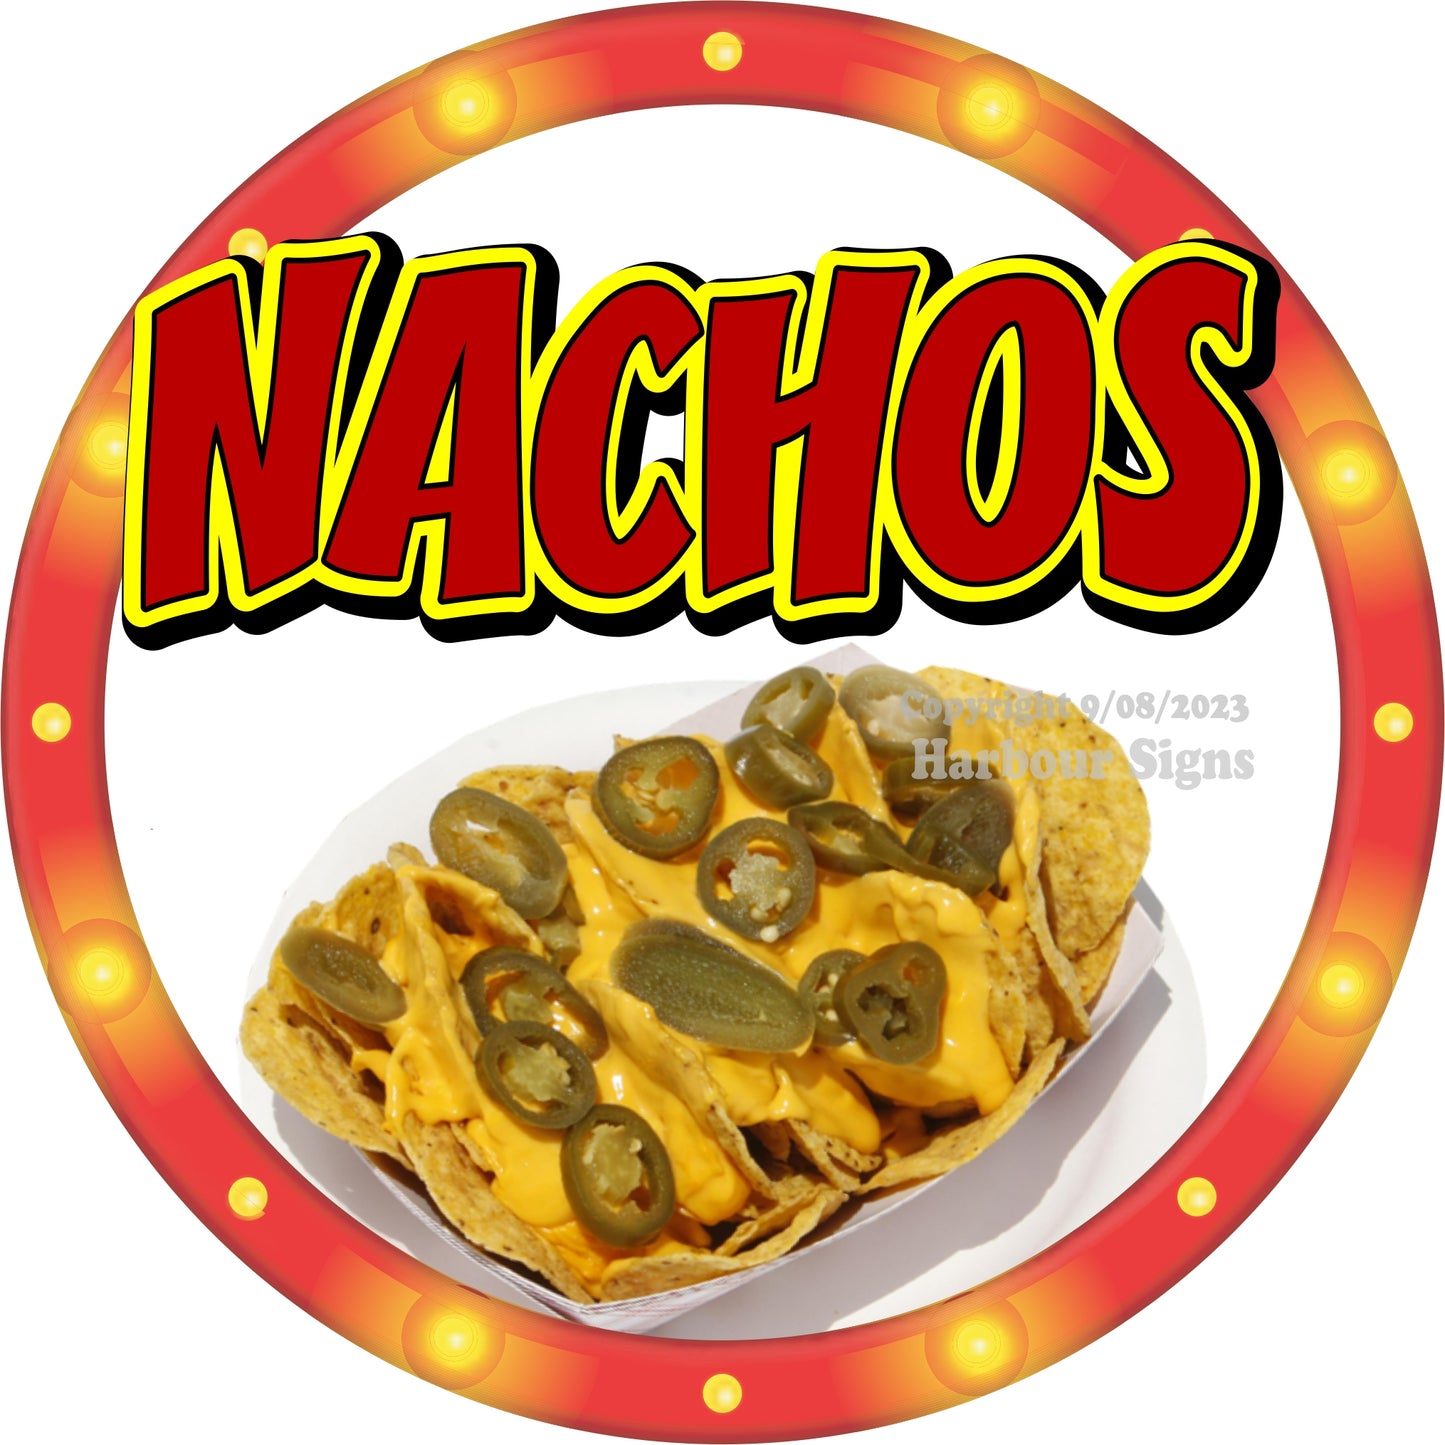 Nachos Decal Food Truck Concession Vinyl Sticker c2